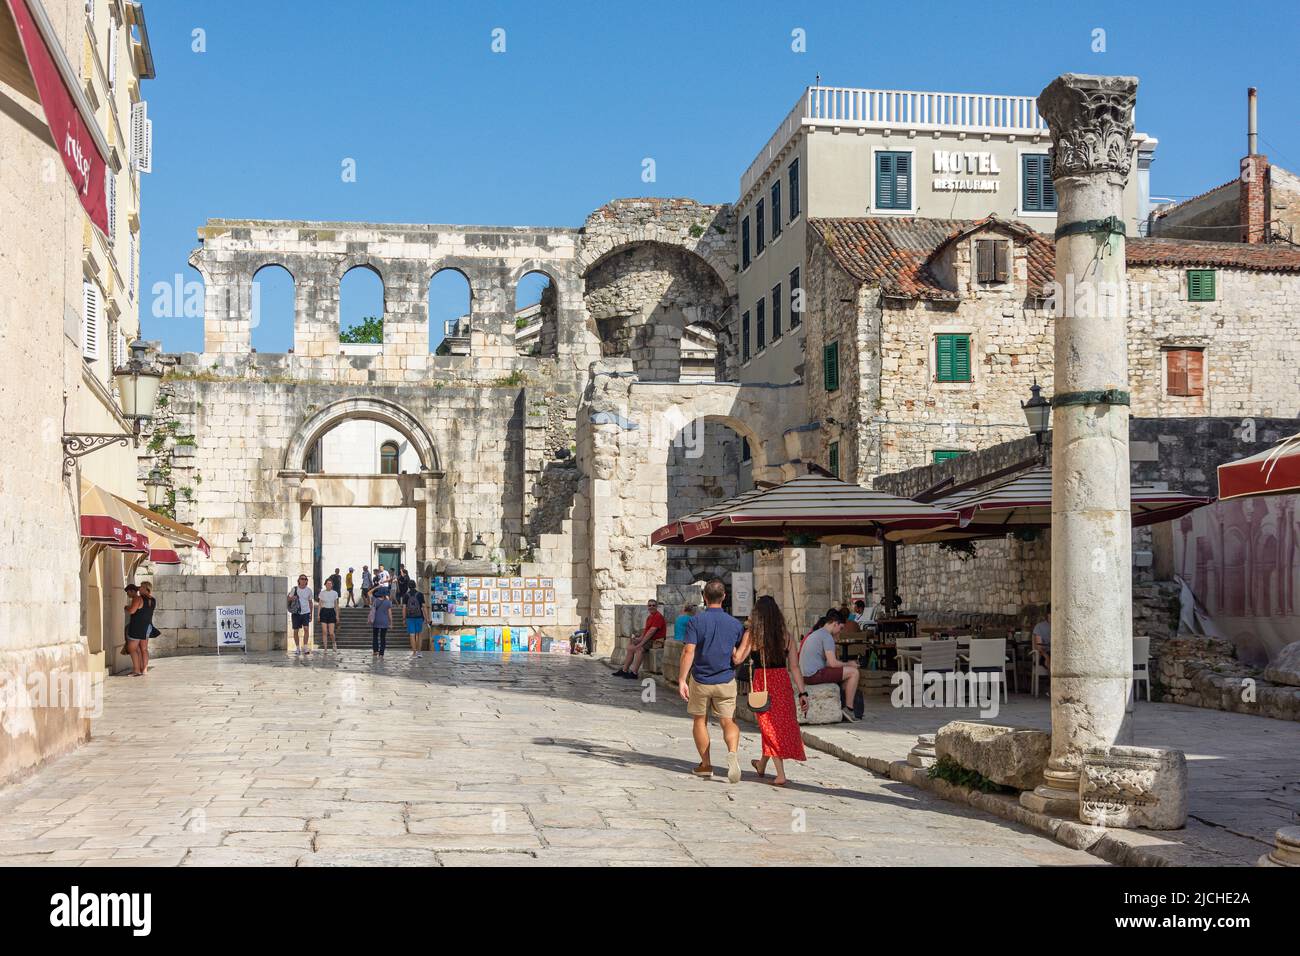 Old gate and walls, Poljana Kraljice Jelene, Old Town, Split, Split-Dalmatia County, Croatia Stock Photo